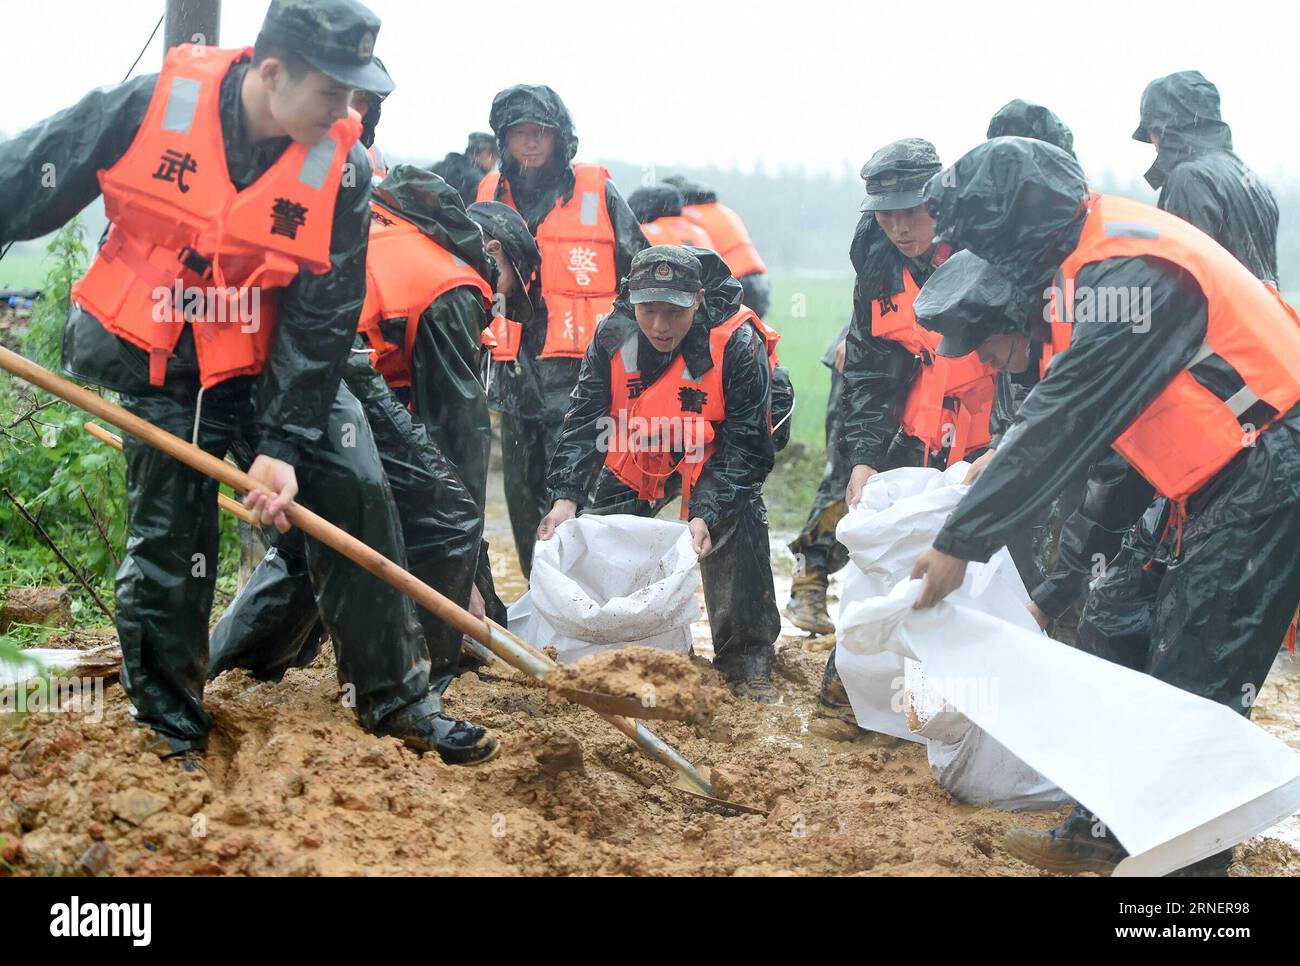 (160702) -- ANQING, 2 luglio 2016 -- agenti di polizia armati preparano sacchi di sabbia per il salvataggio nel villaggio di Mingfeng della contea di Huaining nella città di Anqing, nella provincia di Anhui della Cina orientale, 2 luglio 2016. A causa delle forti piogge, i soccorritori sono stati inviati per evacuare i residenti intrappolati nelle inondazioni di Anqing City sabato. (Wyl) CHINA-ANHUI-FLOOD-RESCUE (CN) GuoxChen PUBLICATIONxNOTxINxCHN 160702 Anqing 2 luglio 2016 agenti di polizia armata preparano sacchi di sabbia per il salvataggio nel villaggio di Huaining County nella città di Anqing nella provincia di Anhui della Cina orientale 2 luglio 2016 a causa di Heavy Rainfall Rescue sono stati inviati per evacuare i residenti TR Foto Stock